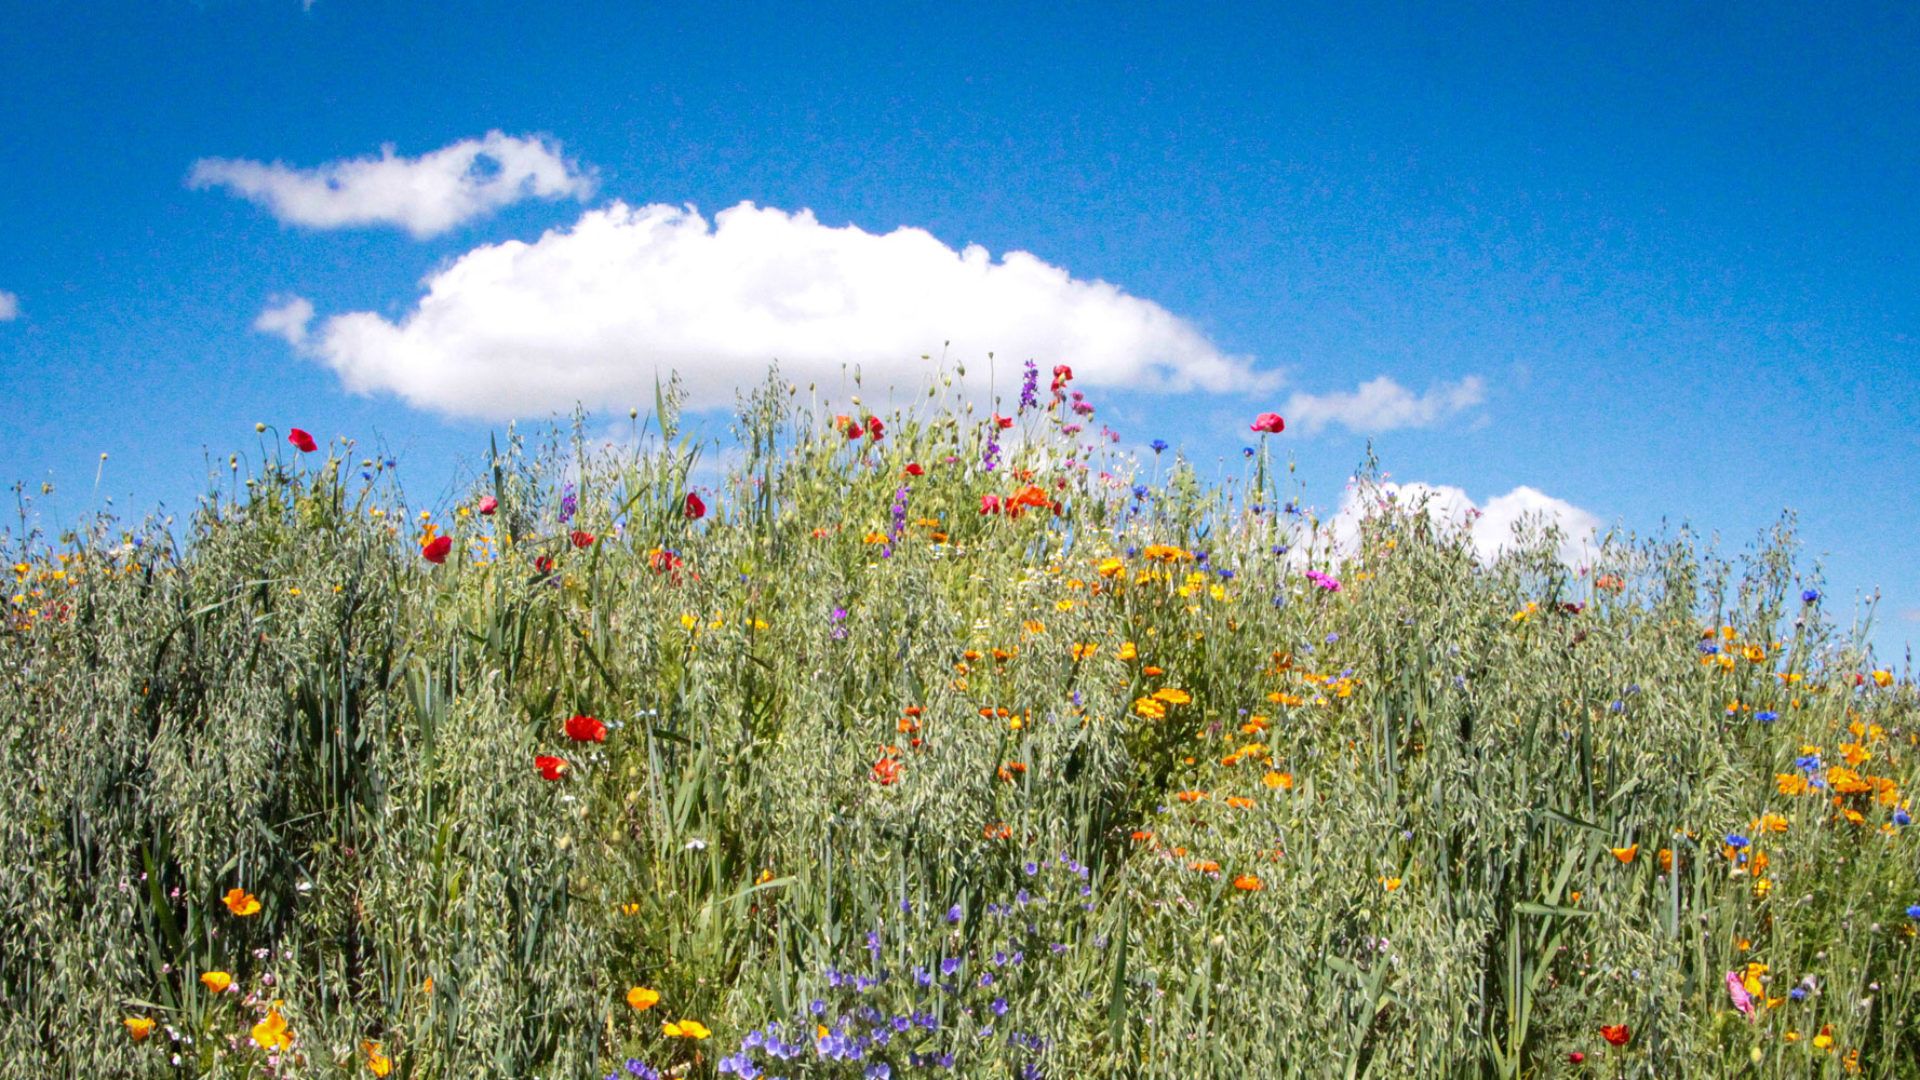  Blumenwiese Hintergrundbild 1920x1080. Was ist regenerative Landwirtschaft? Konzepte auf FarmTicker